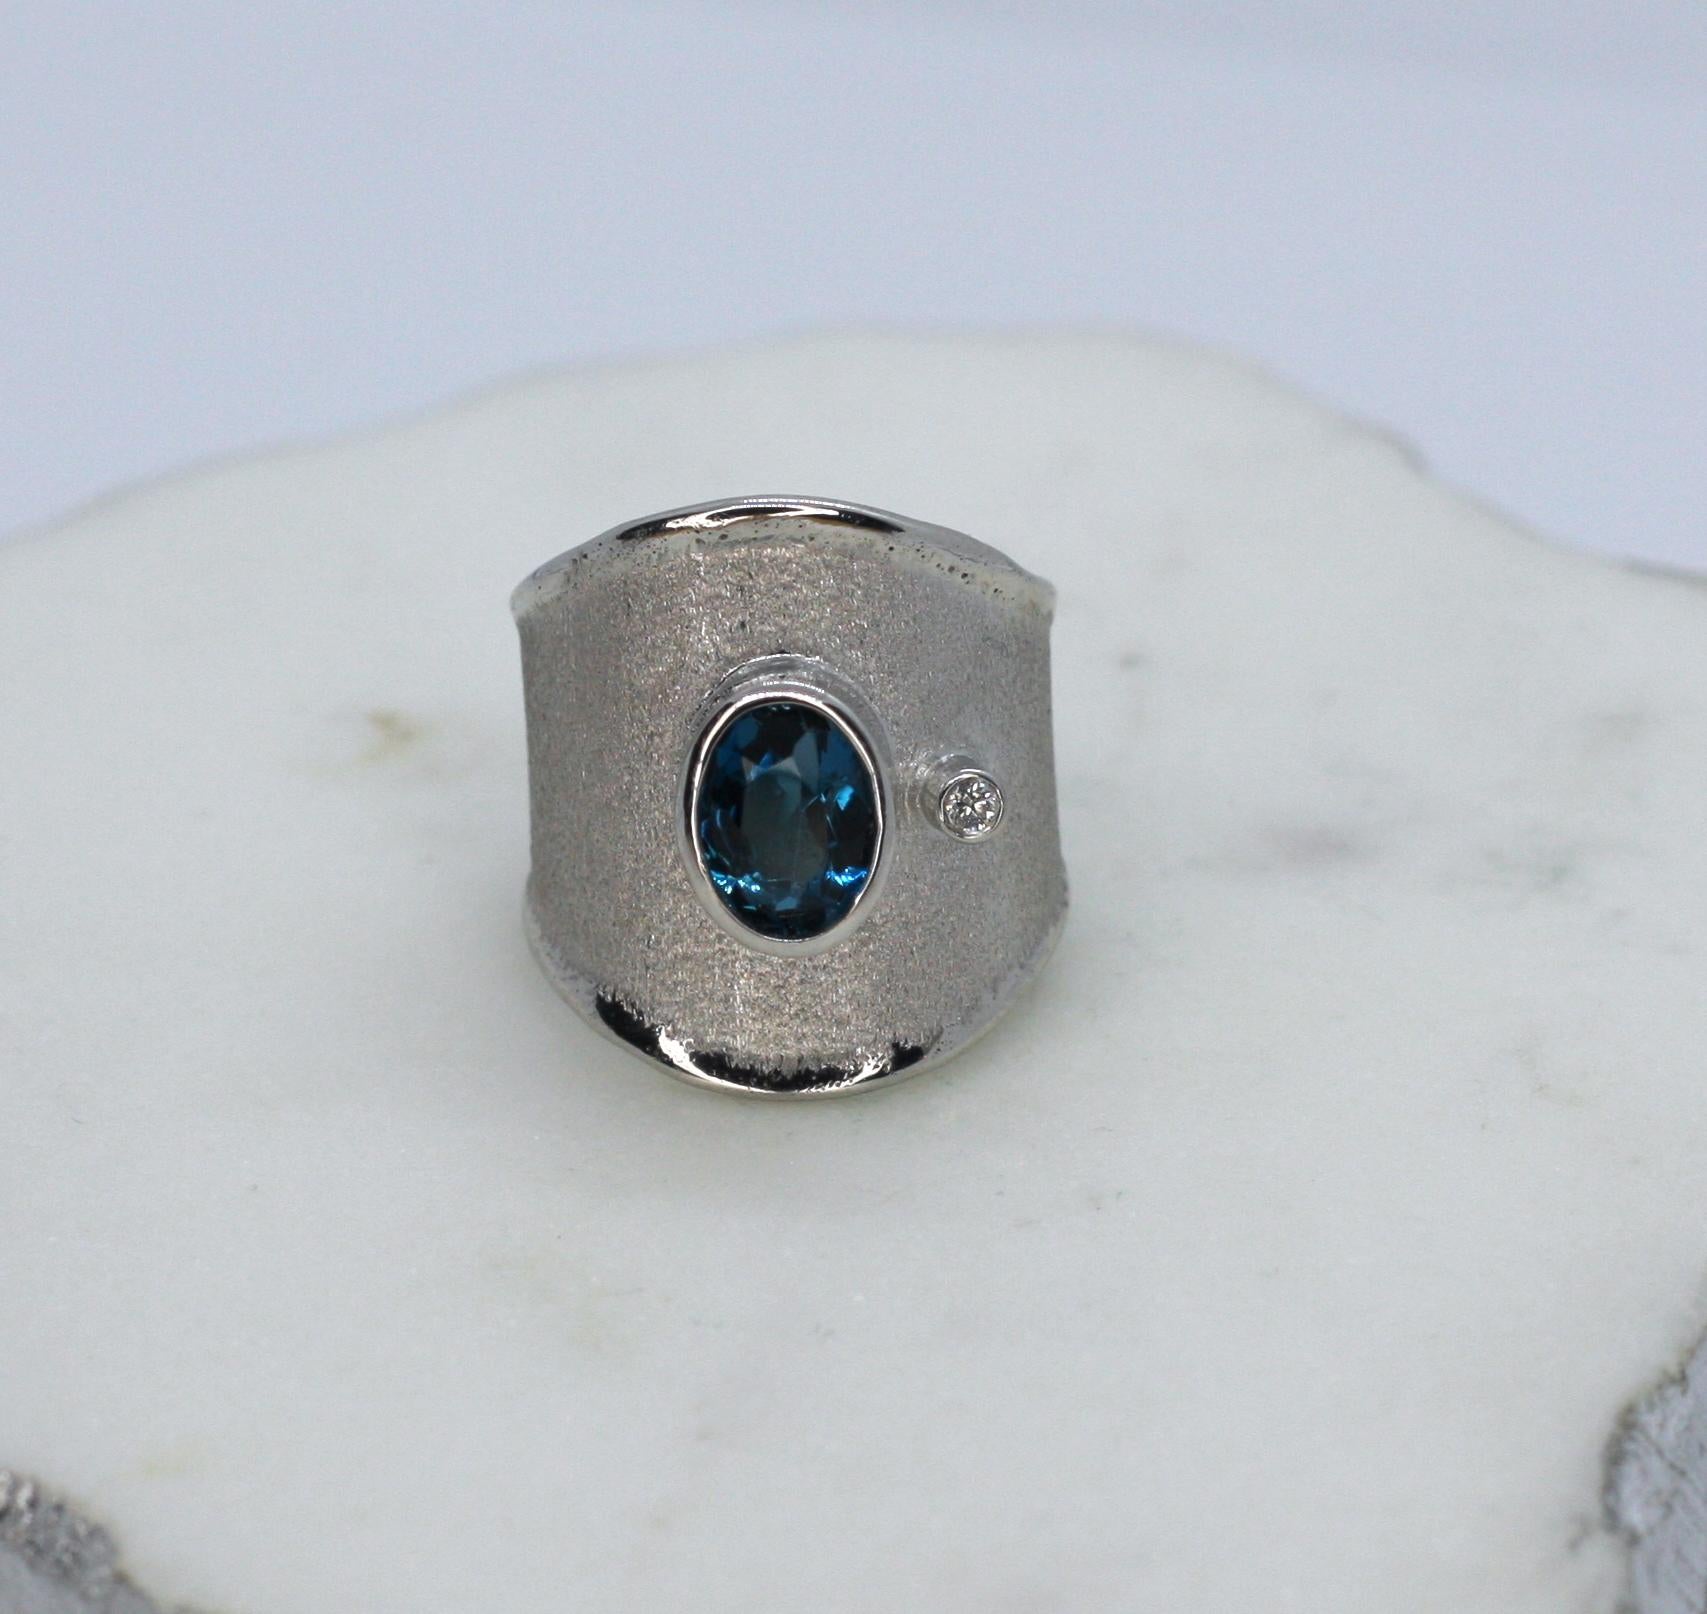 Dieser wunderschöne Ring aus der Ammos-Kollektion von Yianni Creations ist aus 950* Feinsilber handgefertigt und wird in unserer Familienwerkstatt in Griechenland hergestellt. Es hat eine einzigartige gebürstete Textur und ist an den Rändern